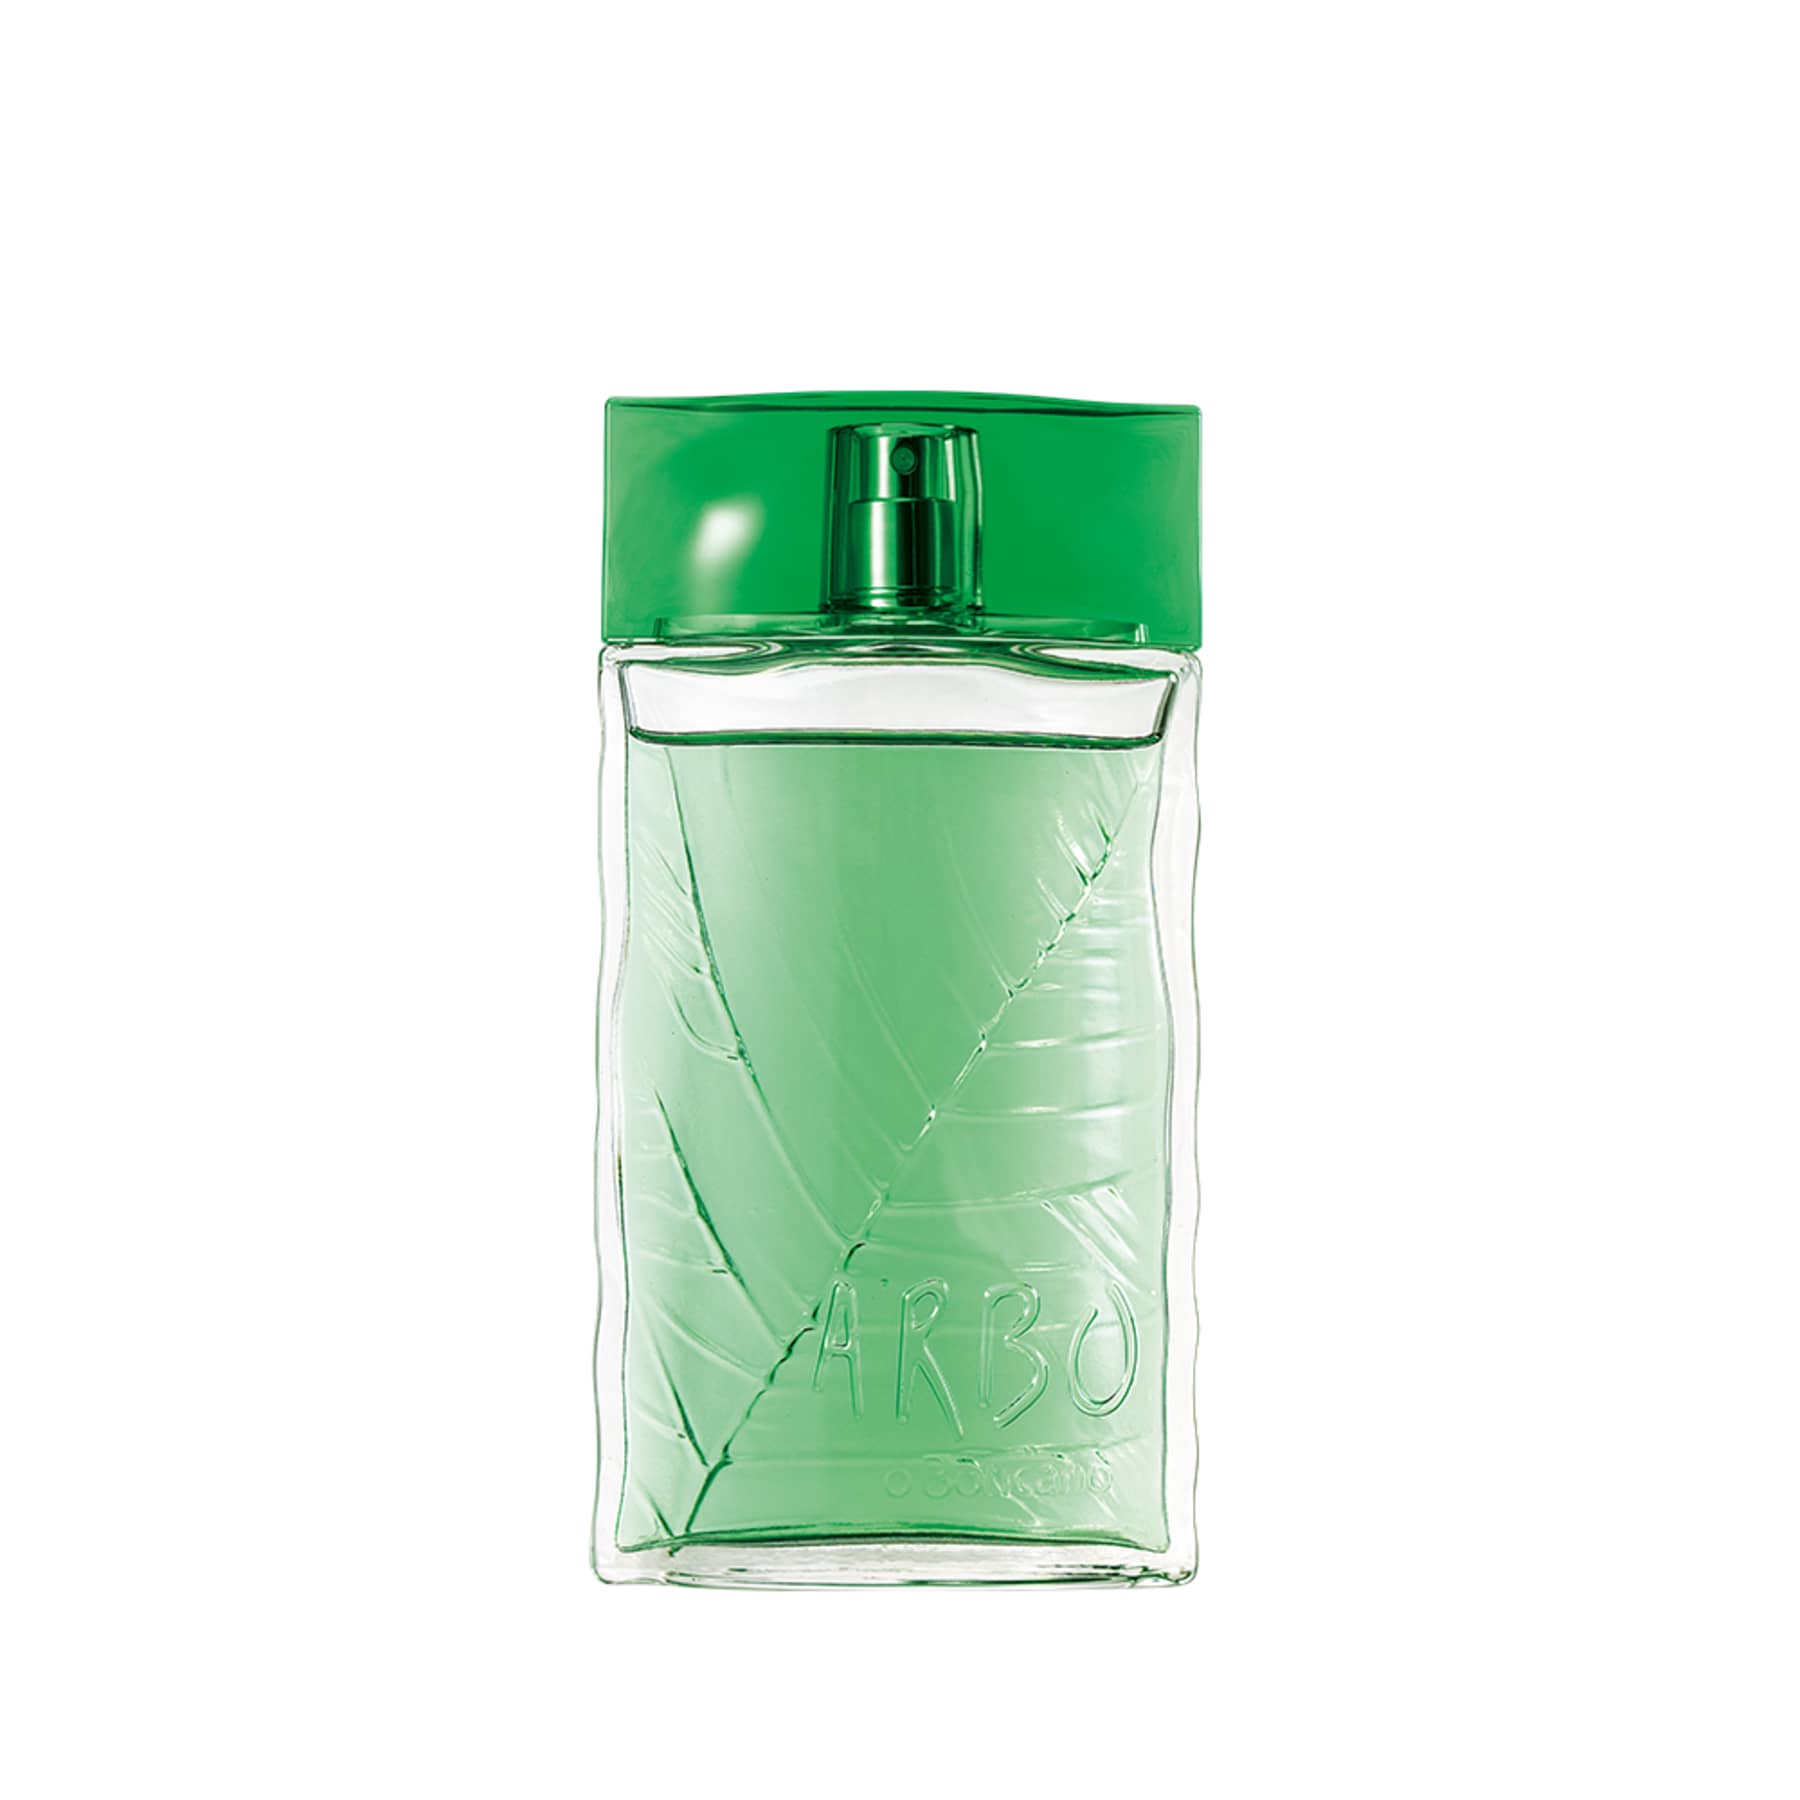 Kit Arbo Botanic: Deodorant Cologne 100ml + Body Spray 100ml - o Boticario